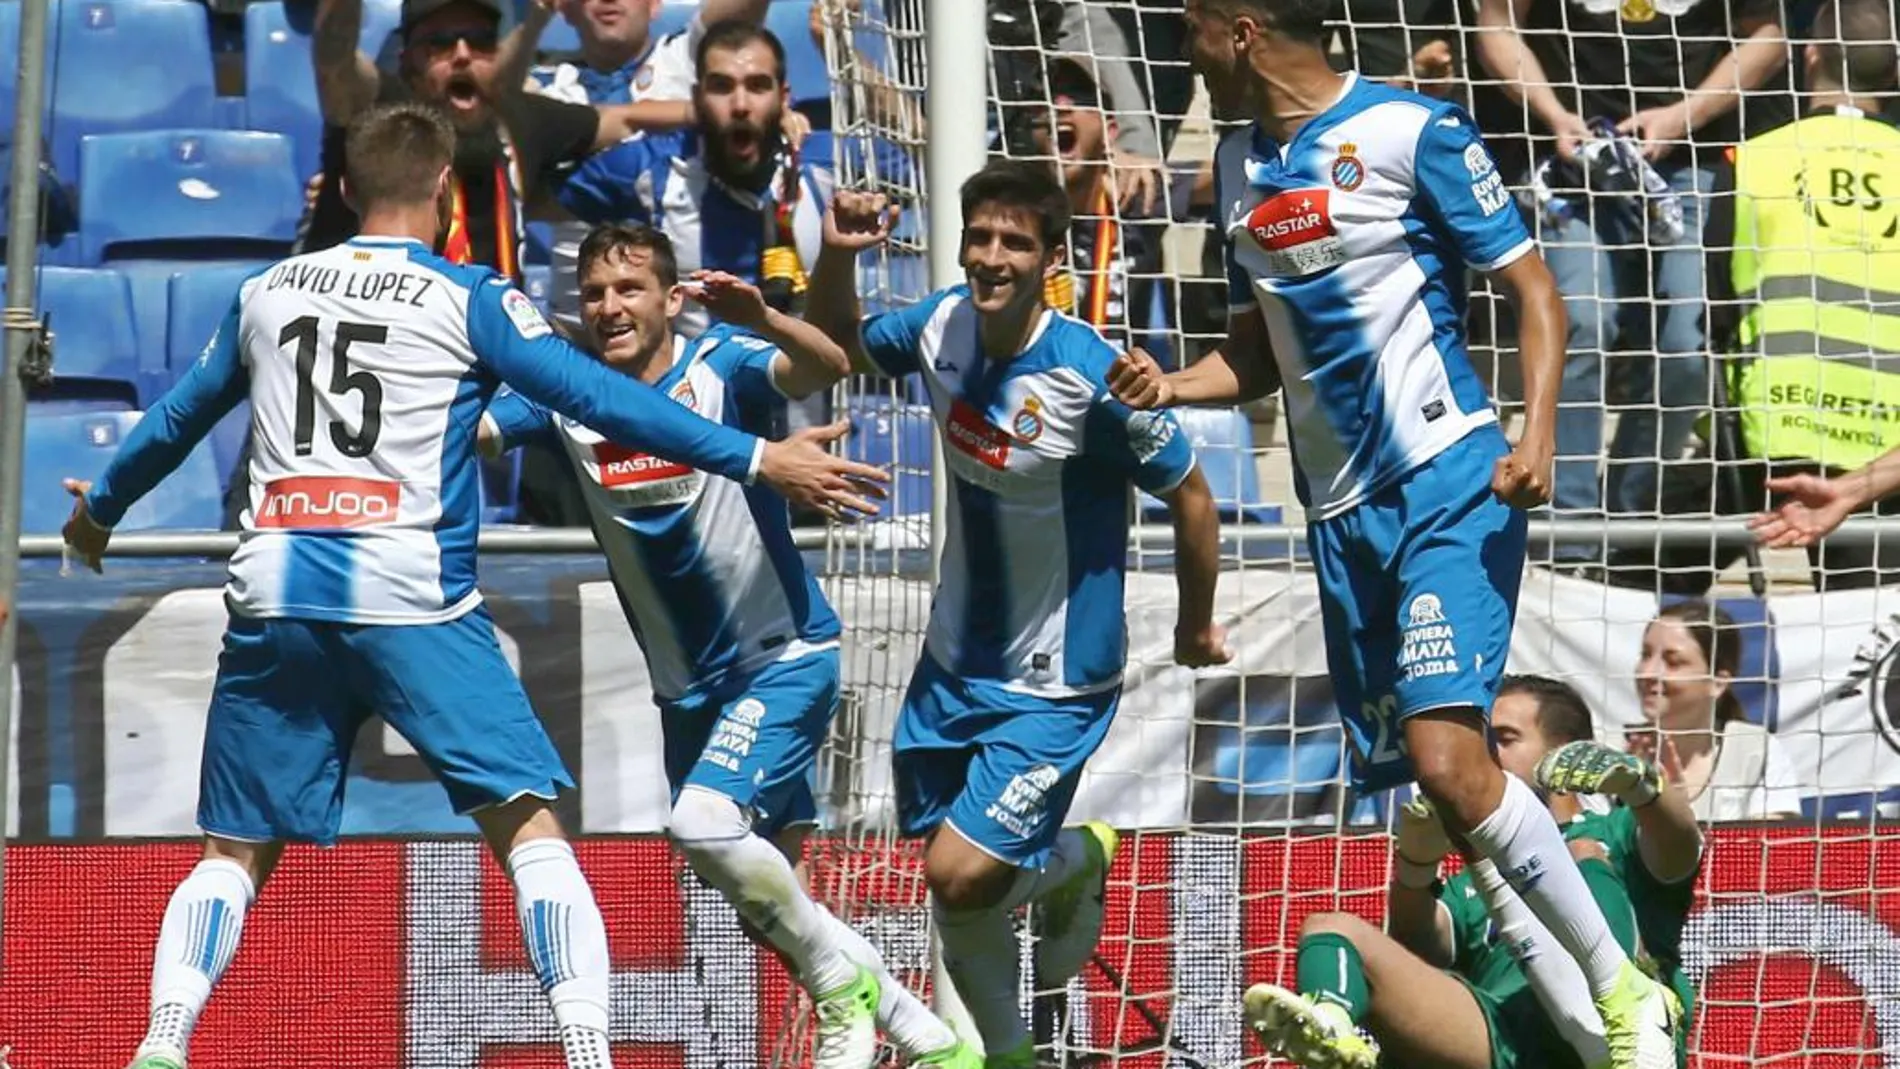 El jugador argentino del Espanyol Pablo Piatti (2i) celebra con su compañero David López (i) su gol marcado al Deportivo Alavés